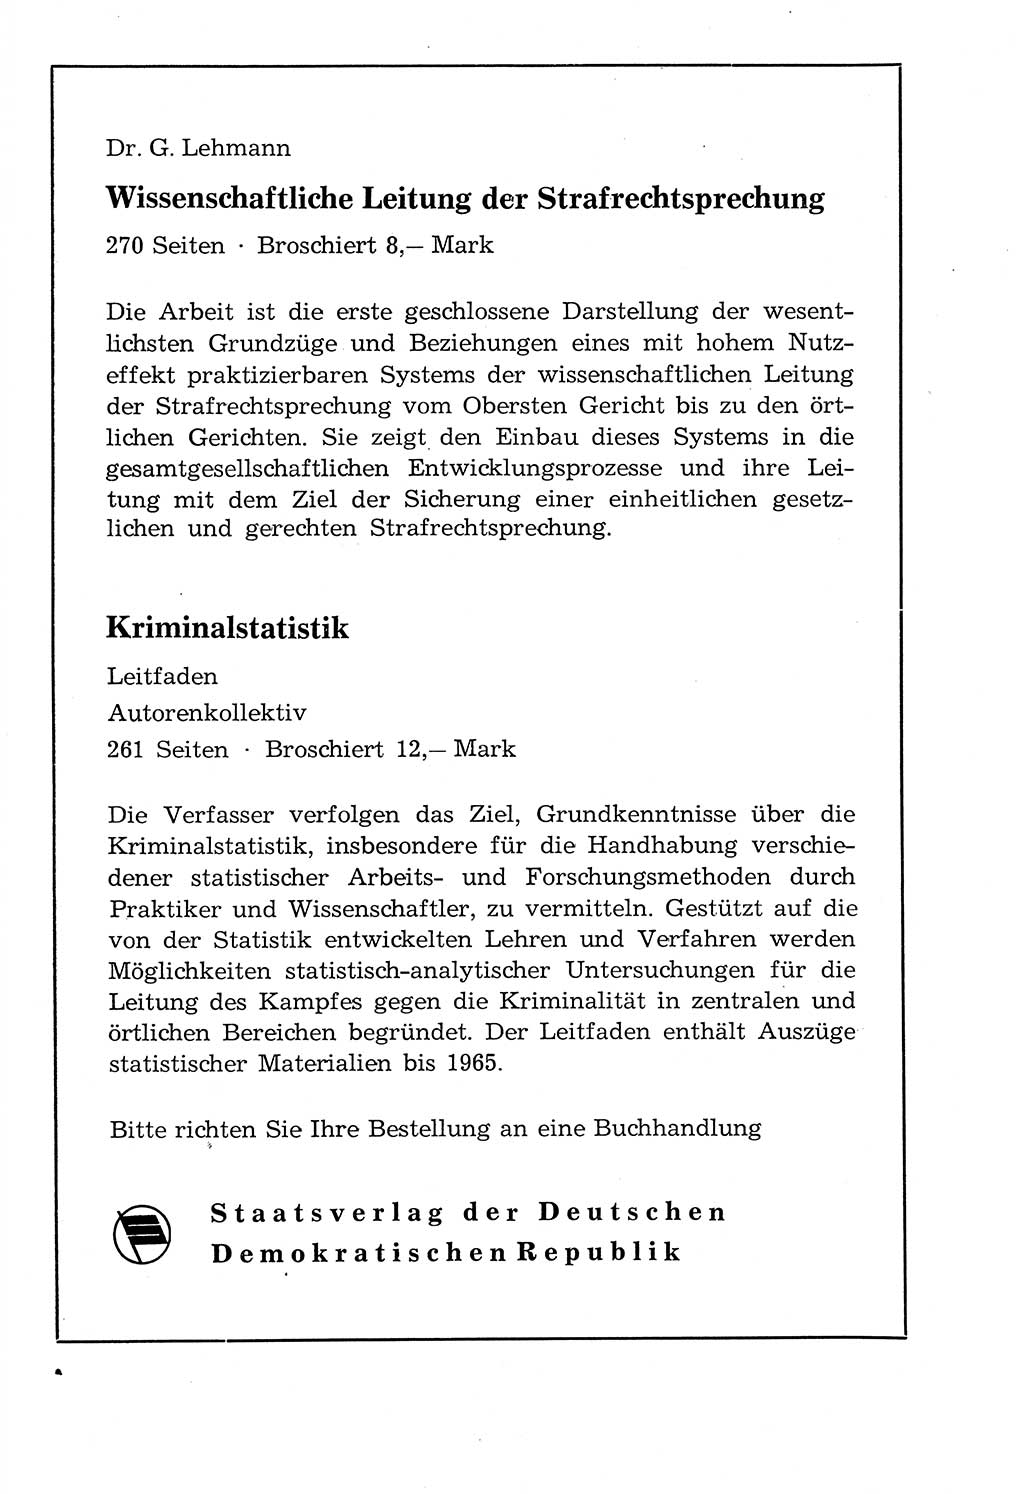 Staat und Recht (StuR), 17. Jahrgang [Deutsche Demokratische Republik (DDR)] 1968, Seite 1502 (StuR DDR 1968, S. 1502)